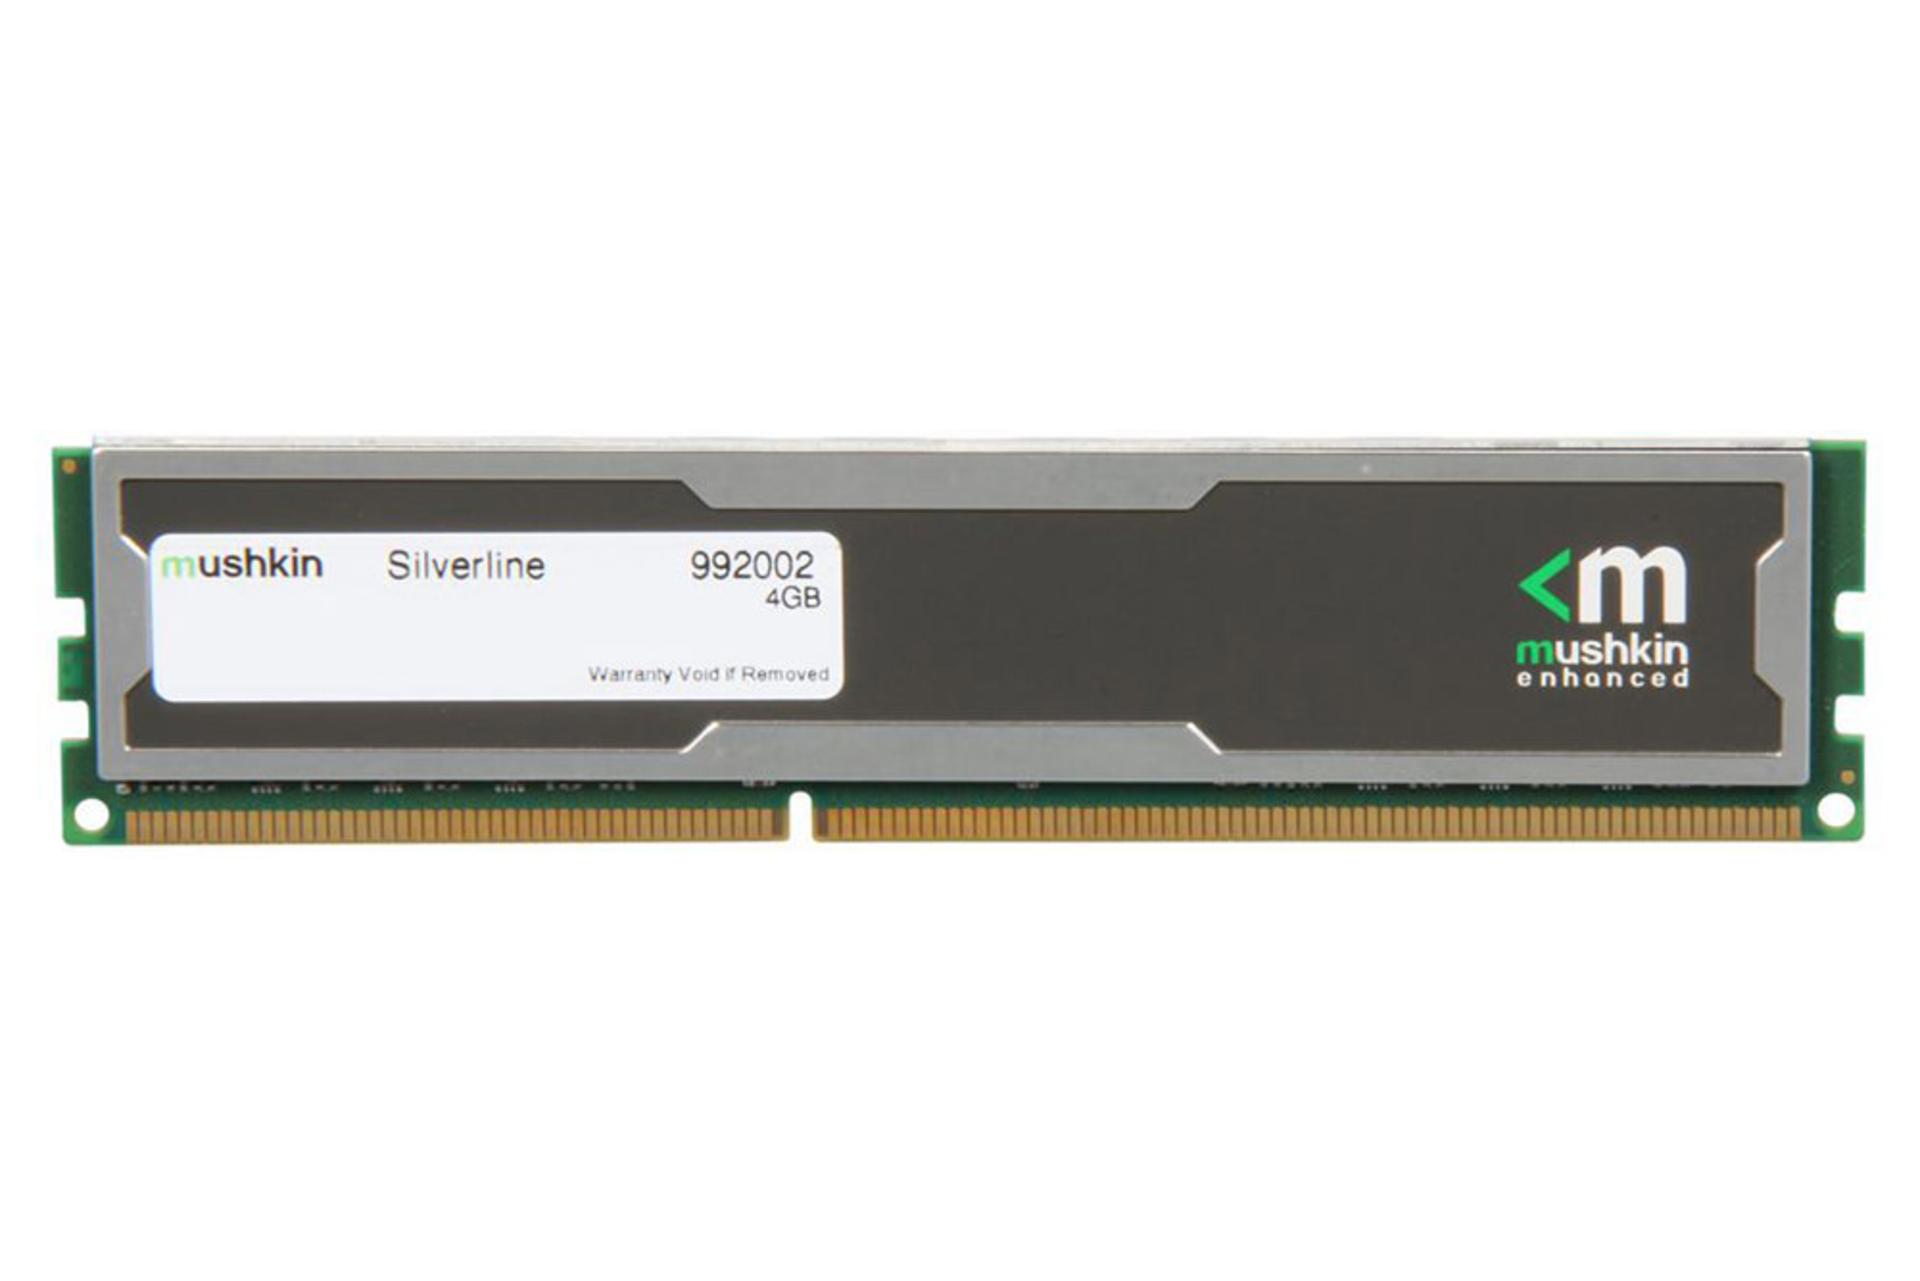  رم ماشکین Silverline ظرفیت 4 گیگابایت از نوع DDR3-1333